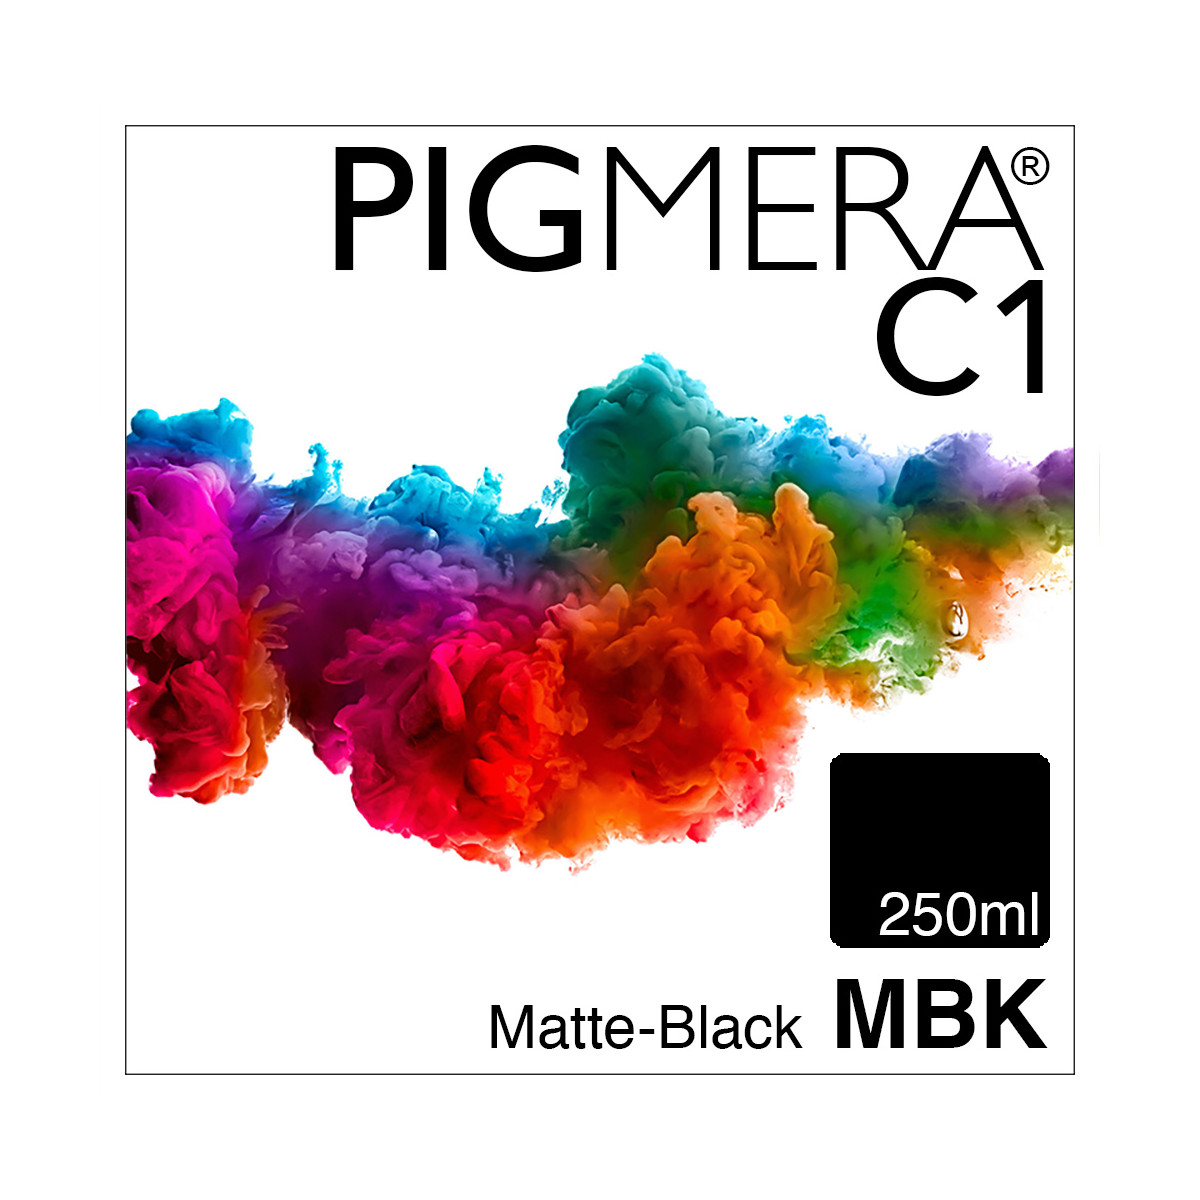 farbenwerk Pigmera C1 BottleMatte-Black 250ml